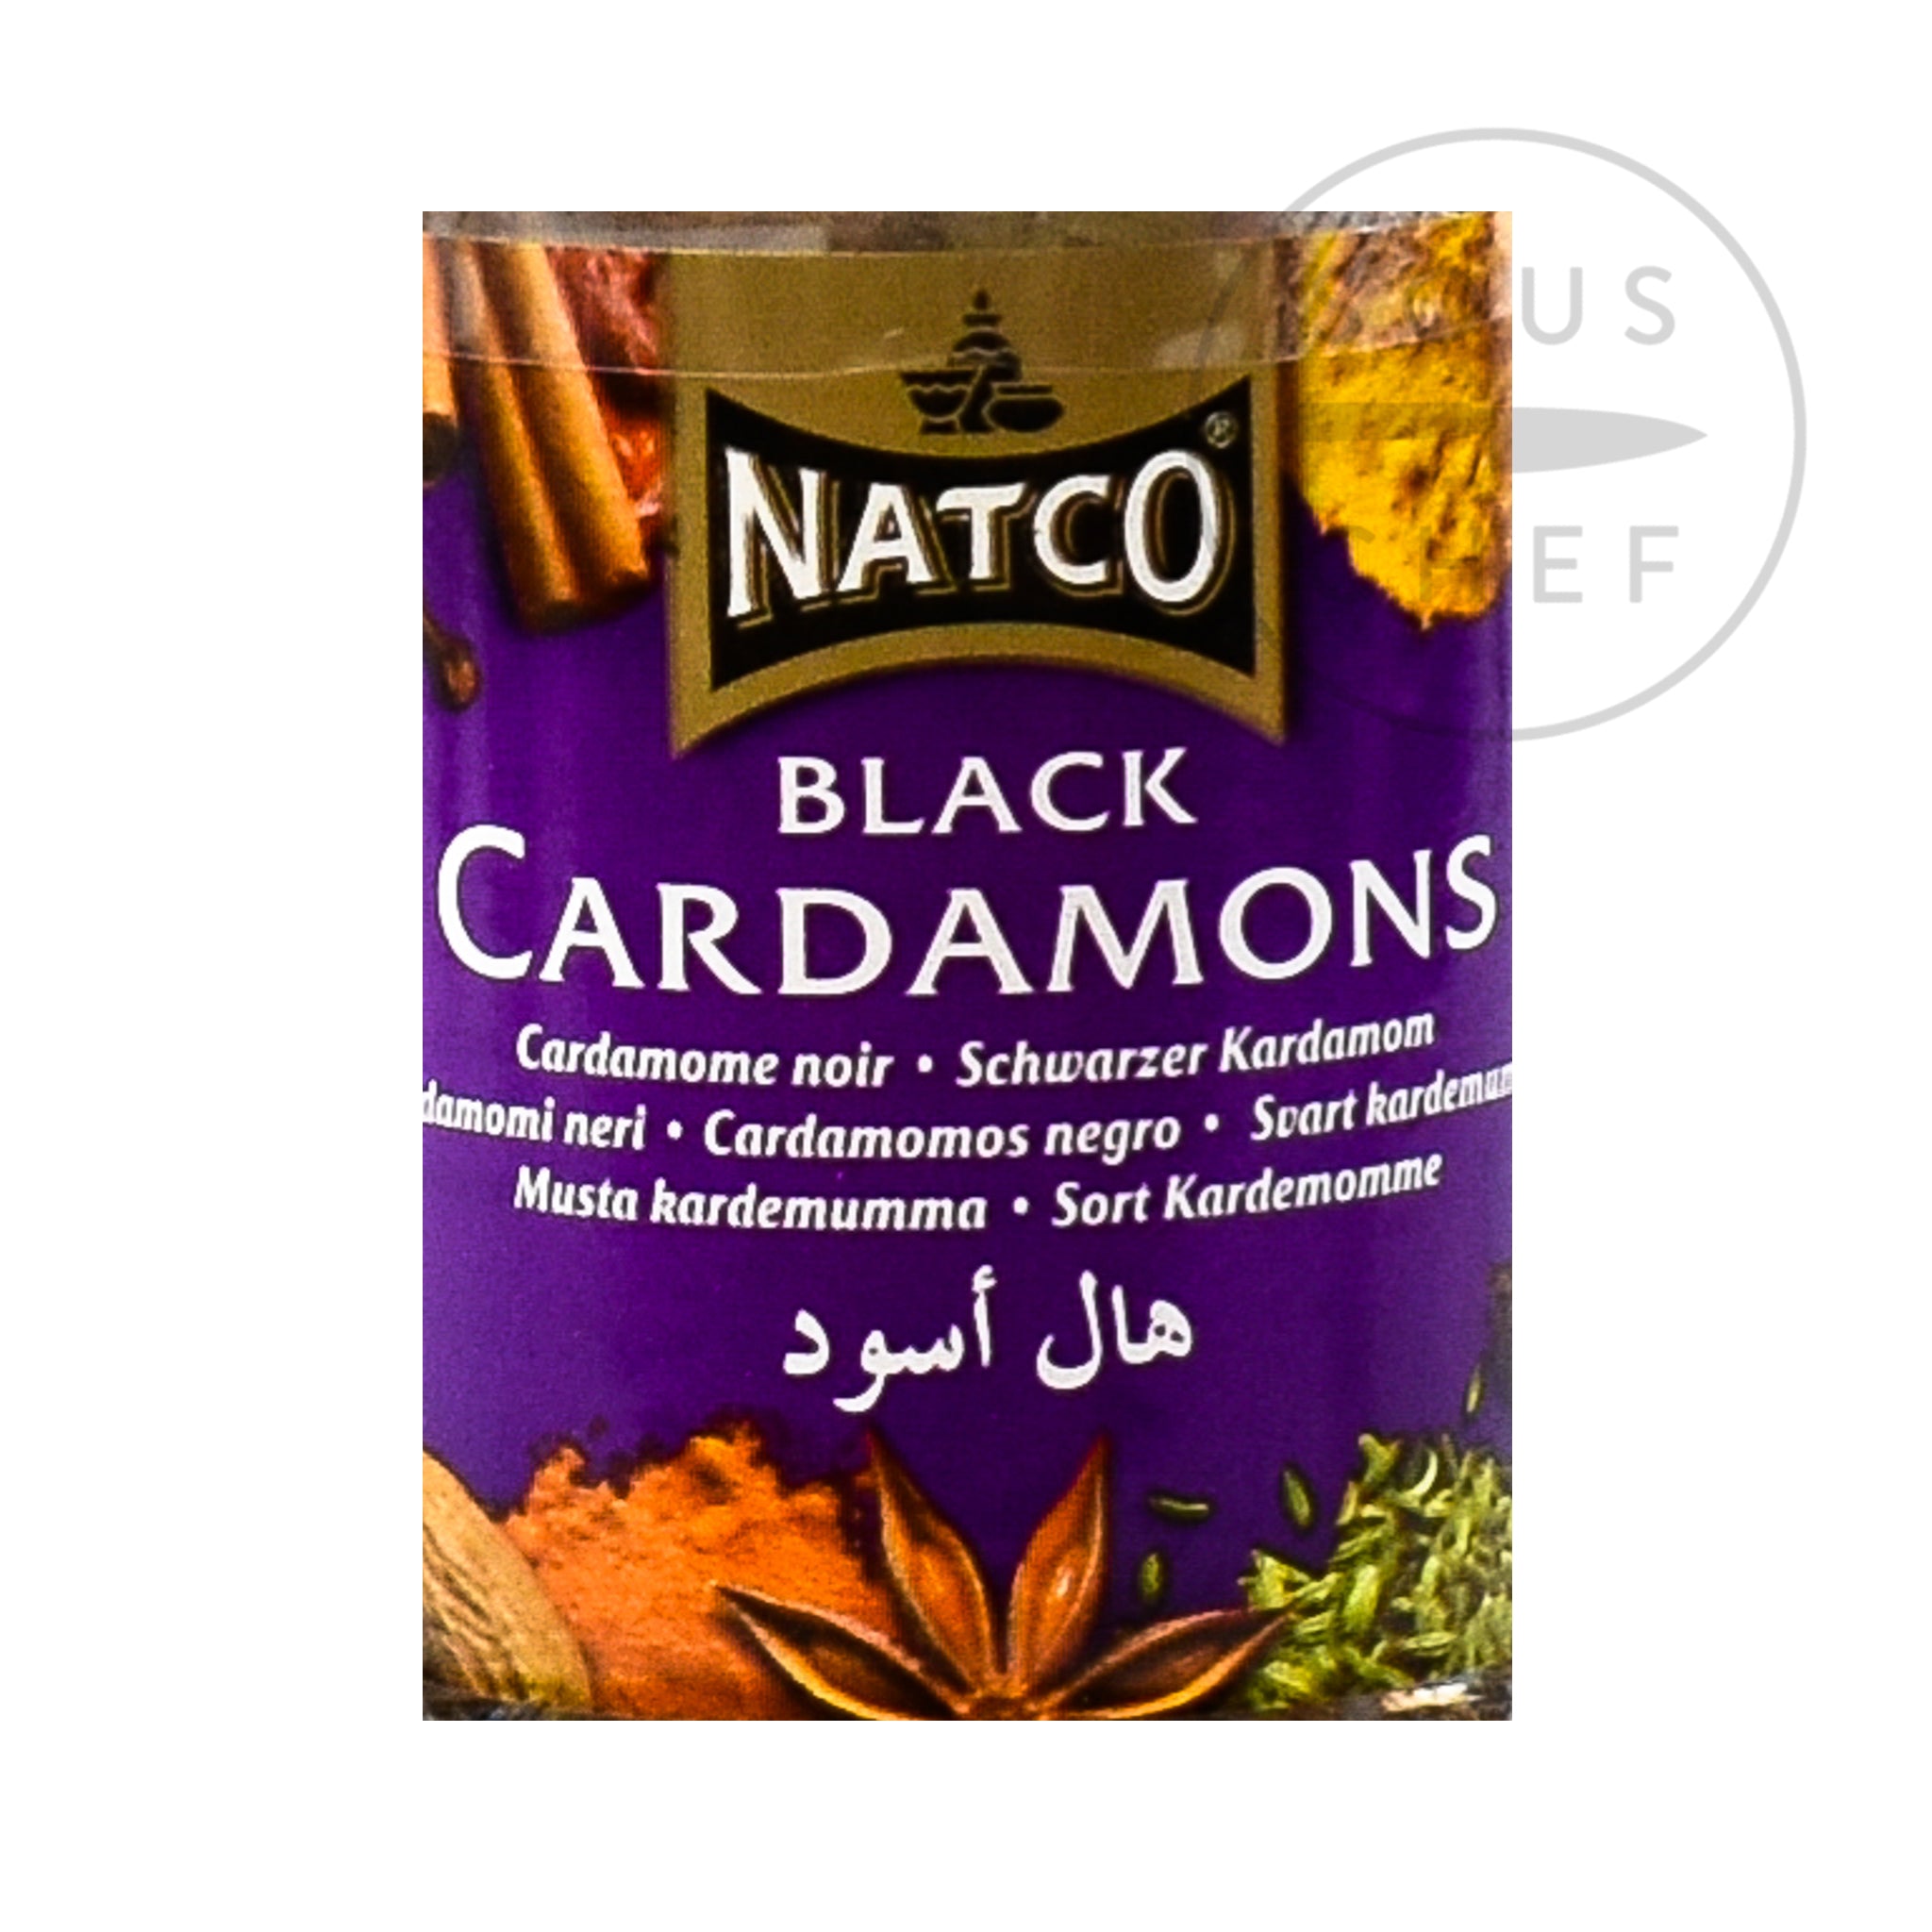 Natco Black Cardamom, 50g